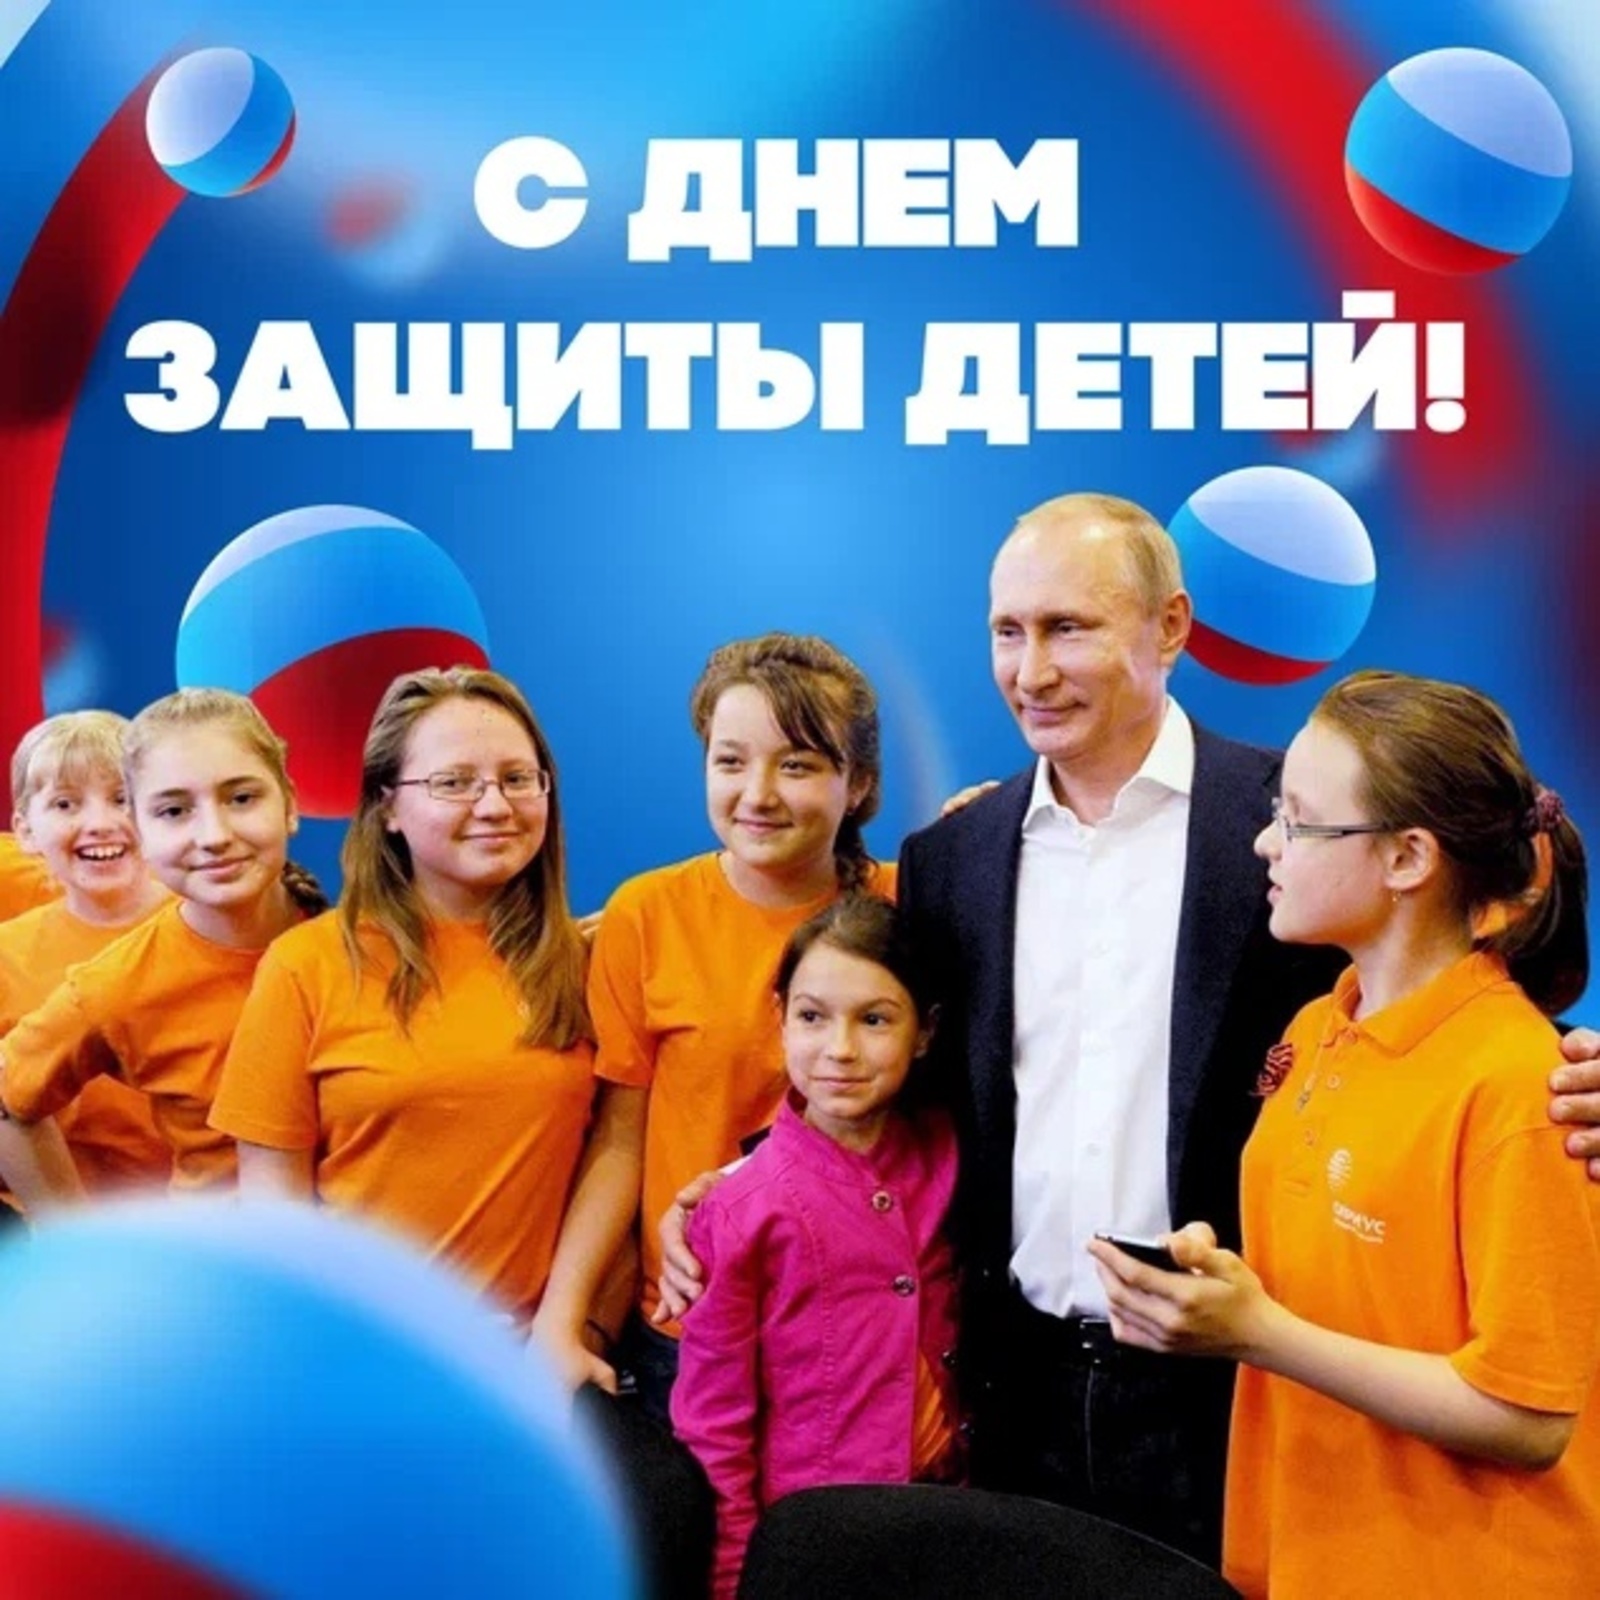 Президент России Владимир Путин поздравил россиян с Днем защиты детей